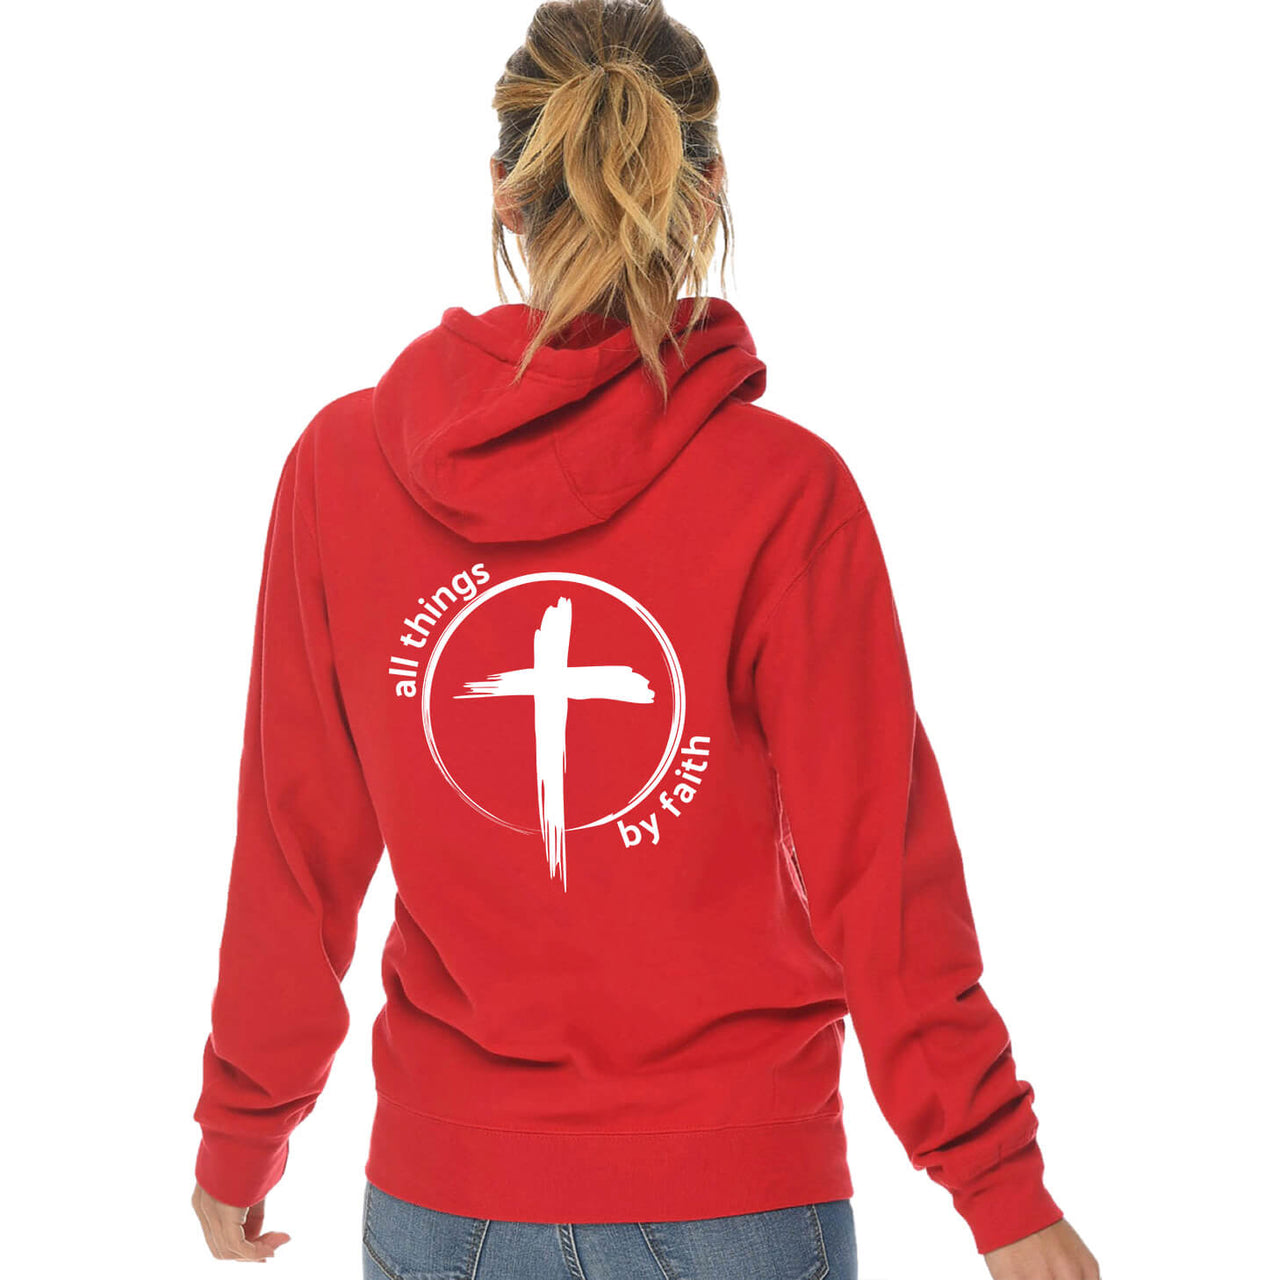 All Things By Faith Cross Full Zip Sweatshirt Hoodie